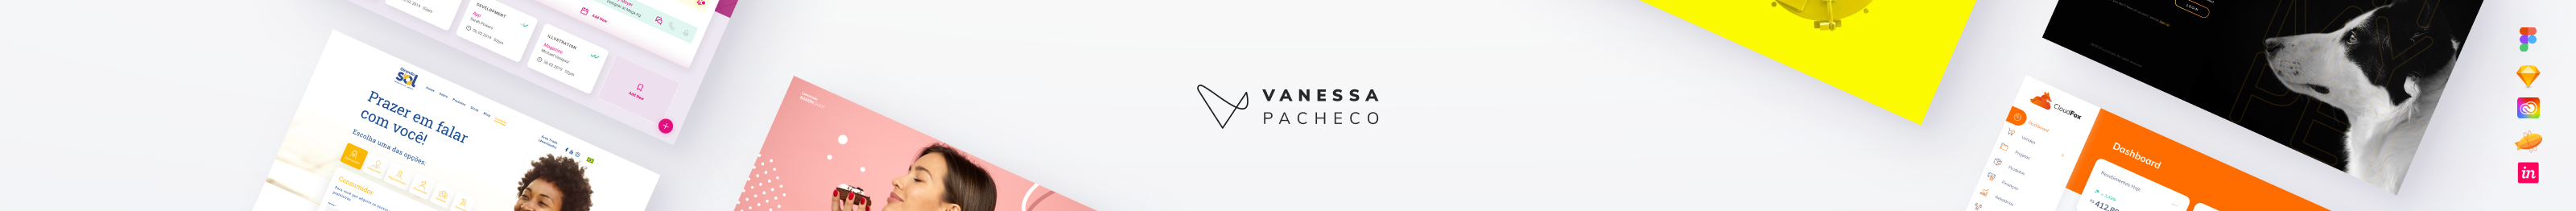 Profil-Banner von Vanessa Pacheco